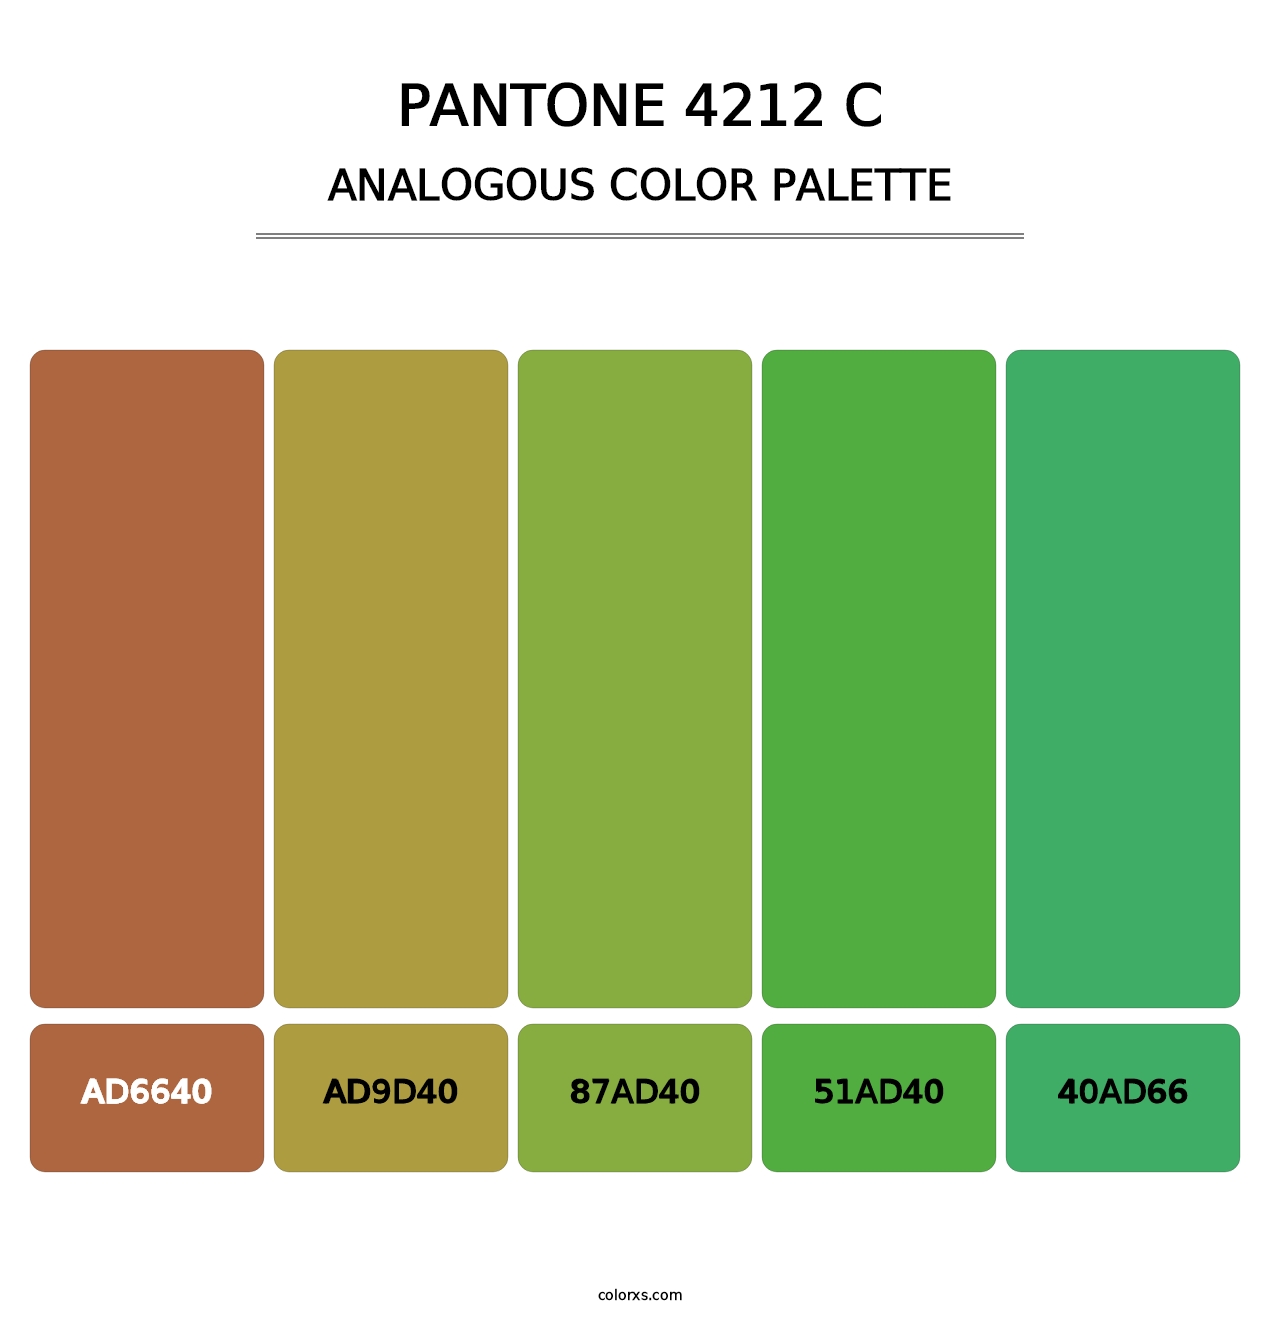 PANTONE 4212 C - Analogous Color Palette